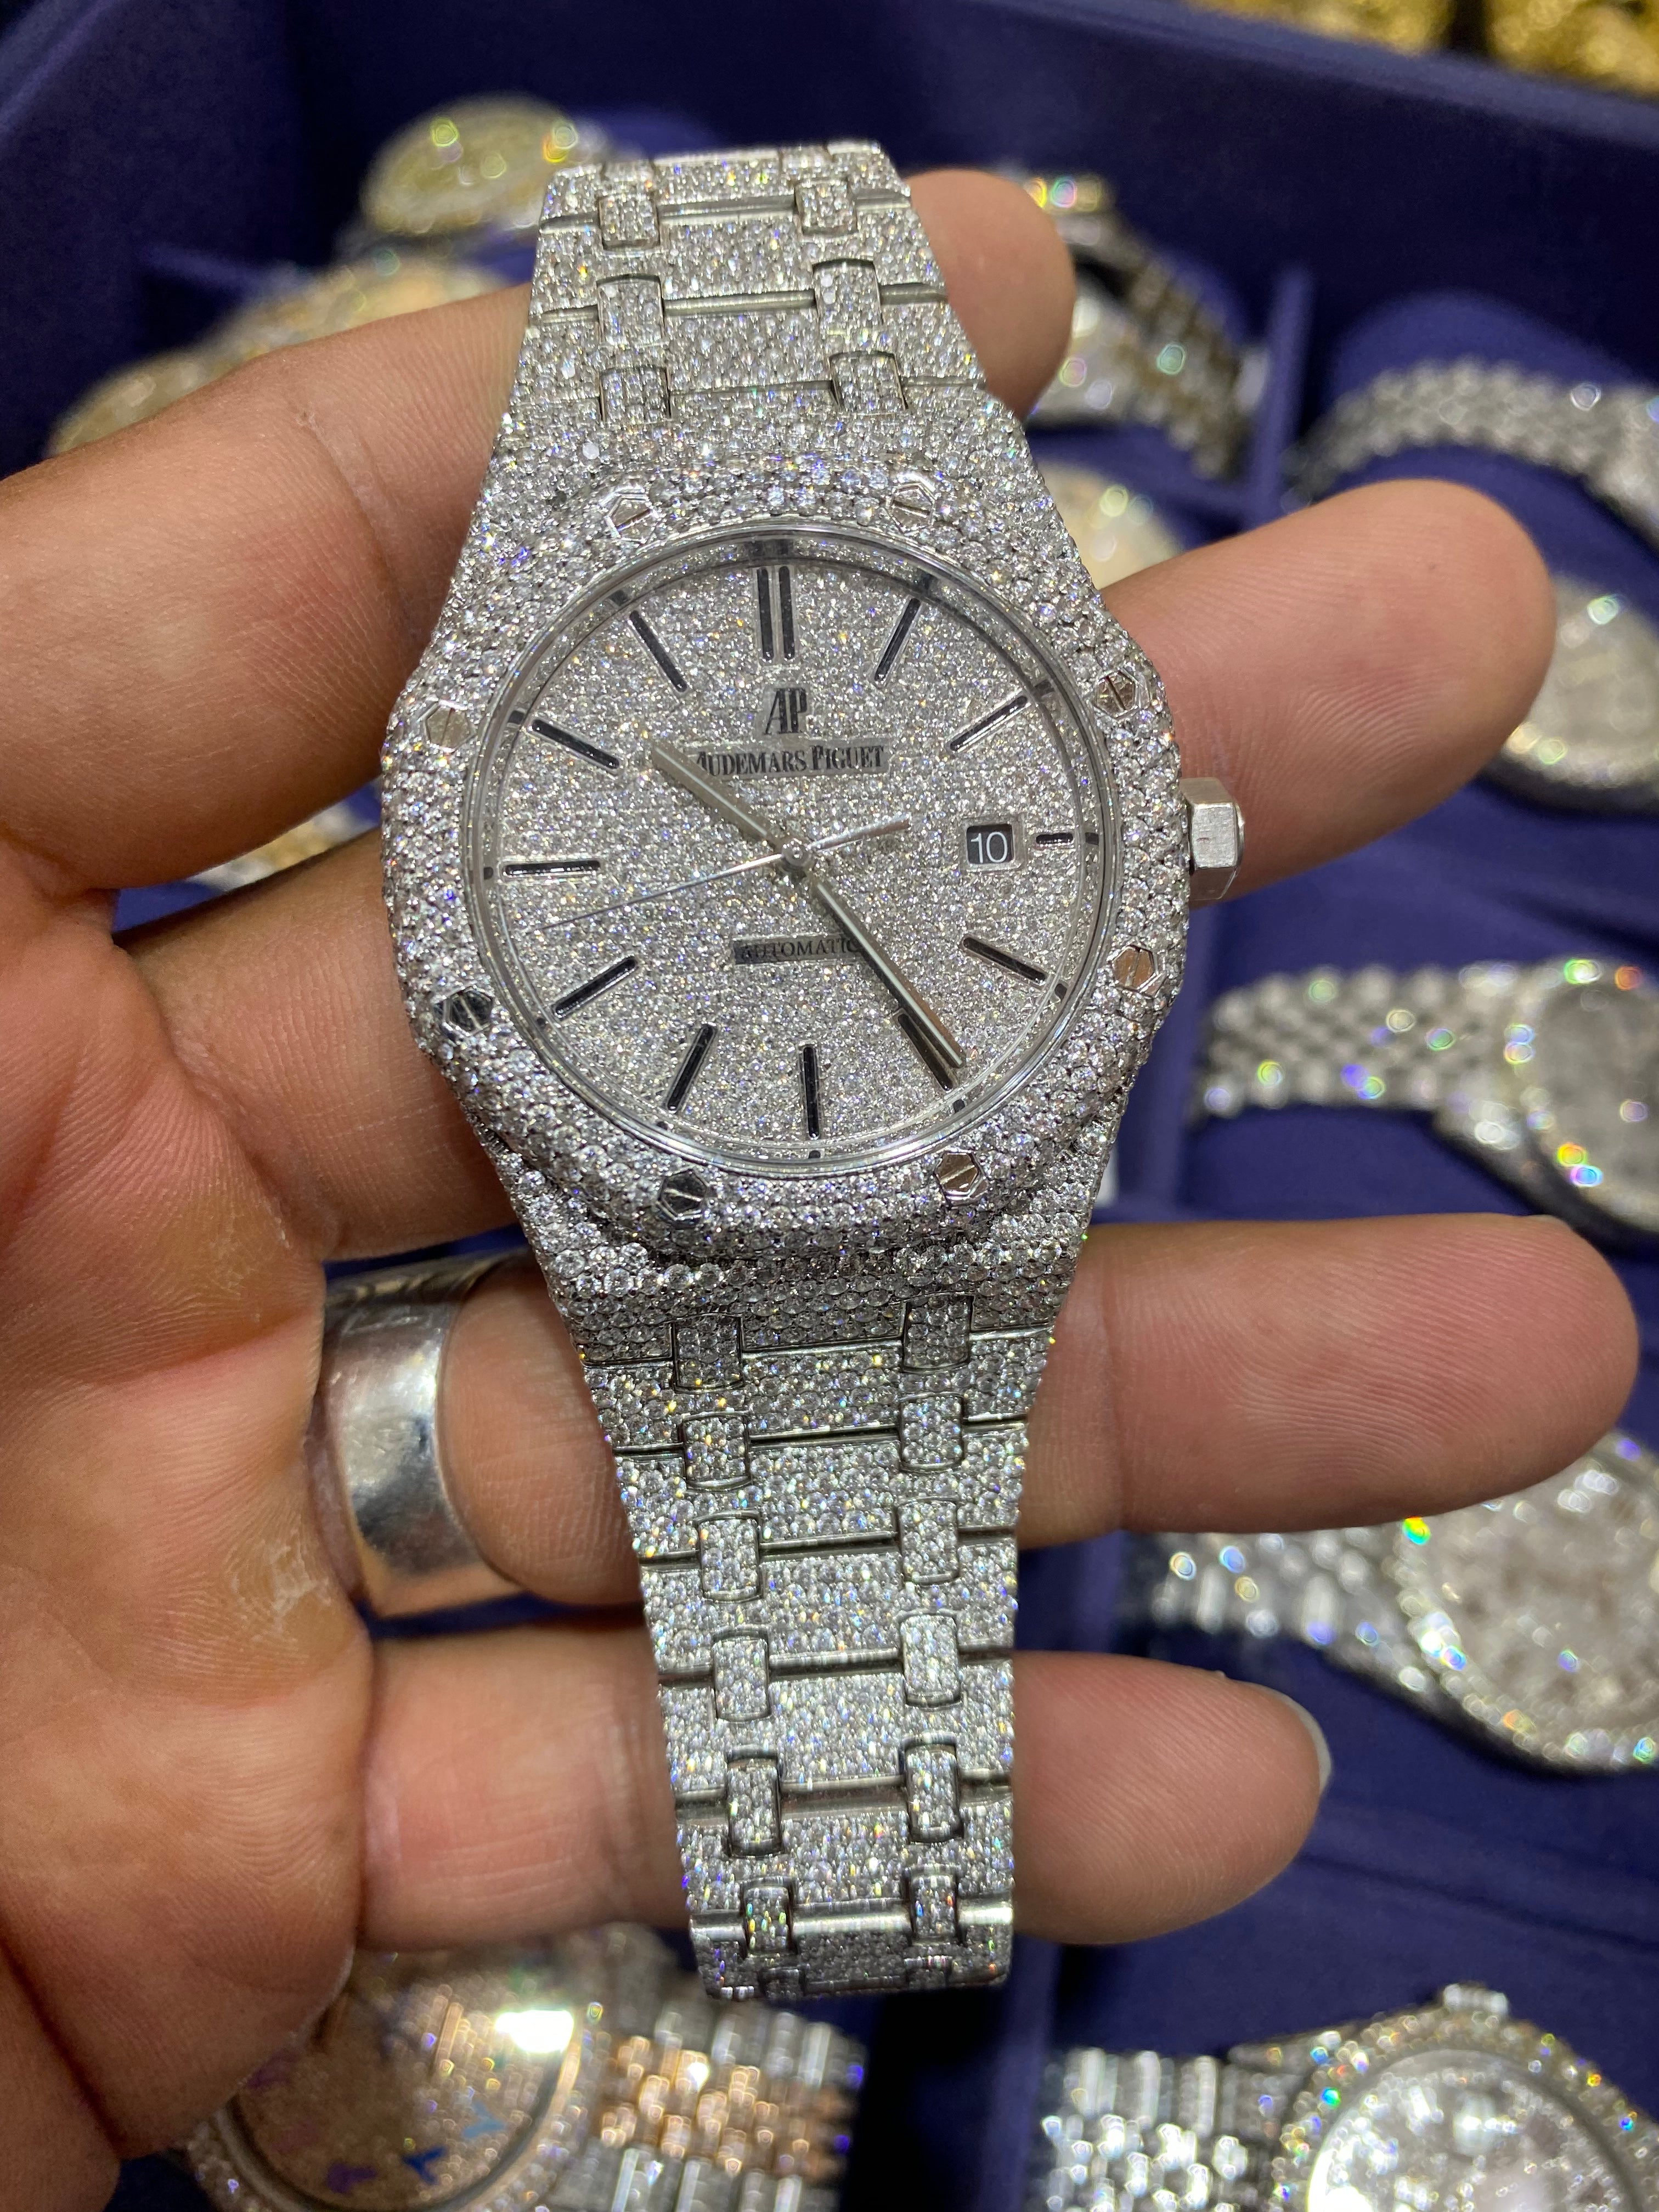 42mm Iced Out Audemar Piguet Watch 40 cts VVS1 Natural Diamonds "Iced Bust Down" AP Watch